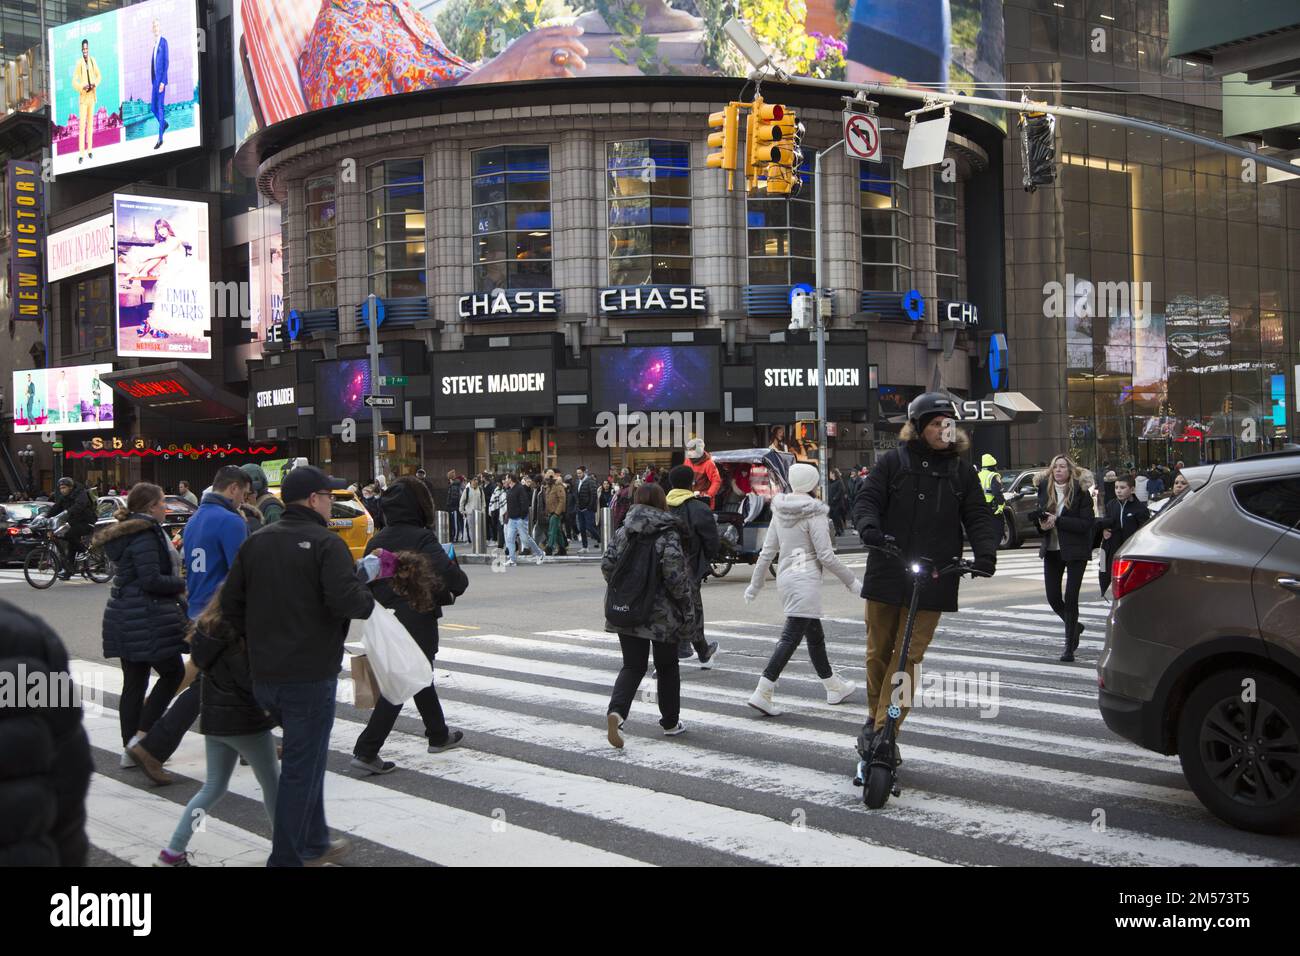 Verkehrs- und Touristenattraktionen in der 7. Avenue und 42. Street am südlichen Ende des Times Square eine Woche vor Weihnachten in Manhattan, NYC. Stockfoto